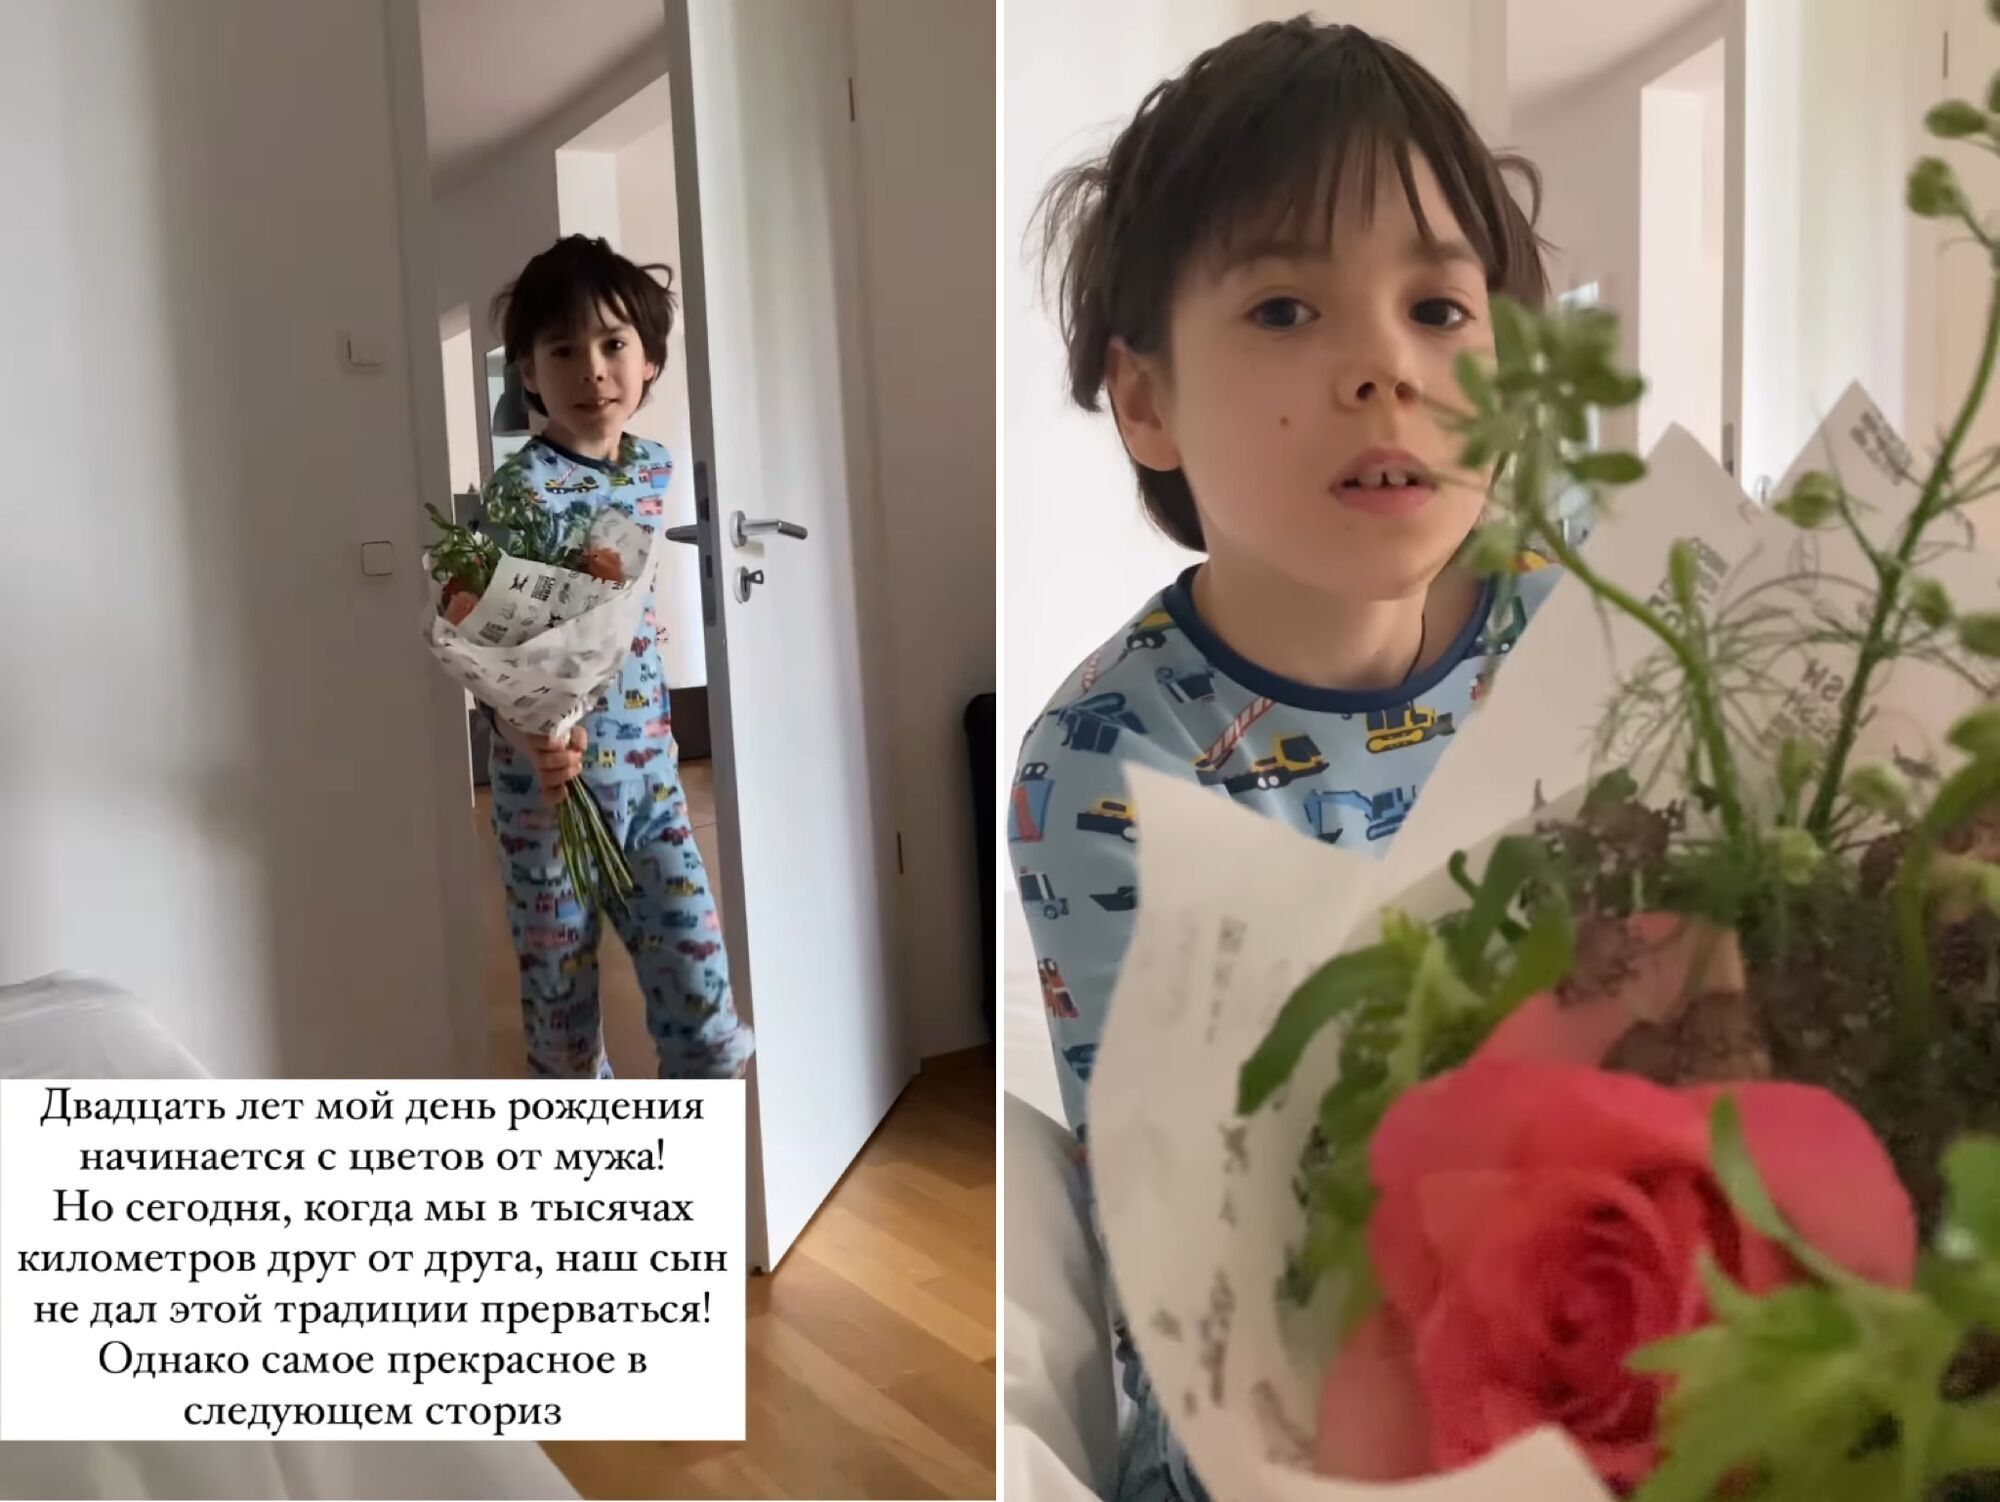 Ефросинина рассказала о трогательном подарке на день рождения от 7-летнего сына